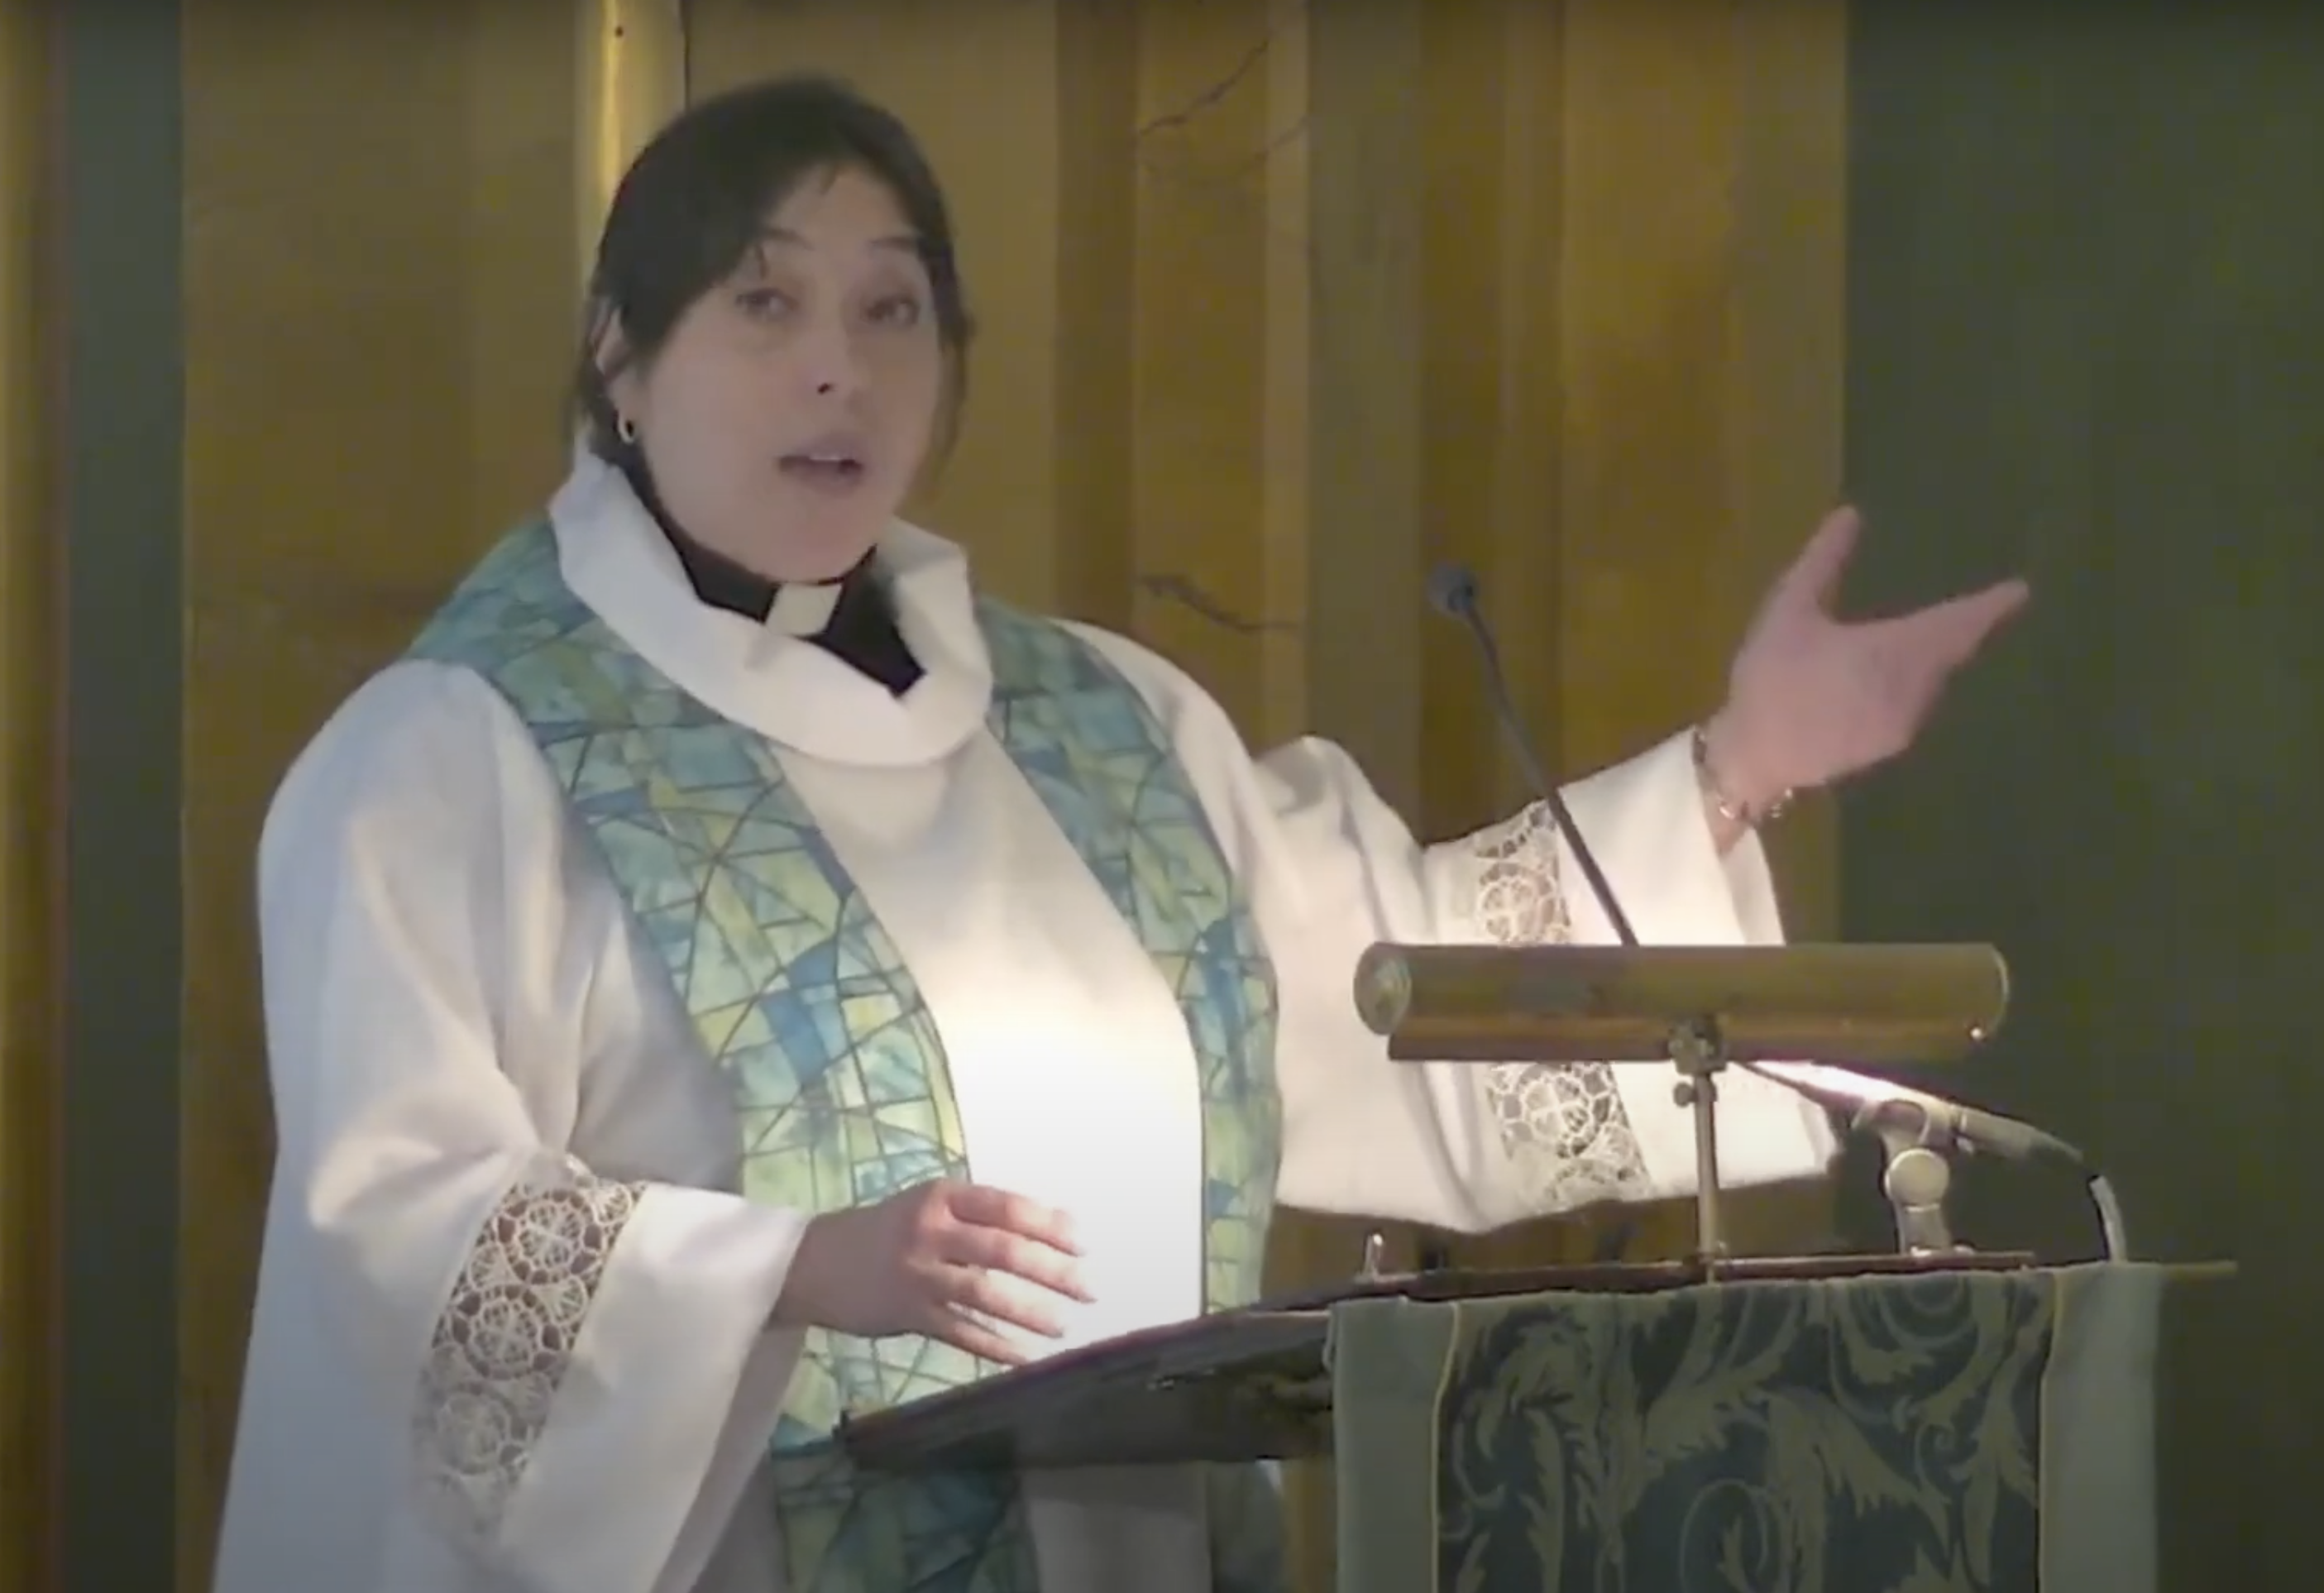 July 16, 2023 – The Rev. Julie Hoplamazian